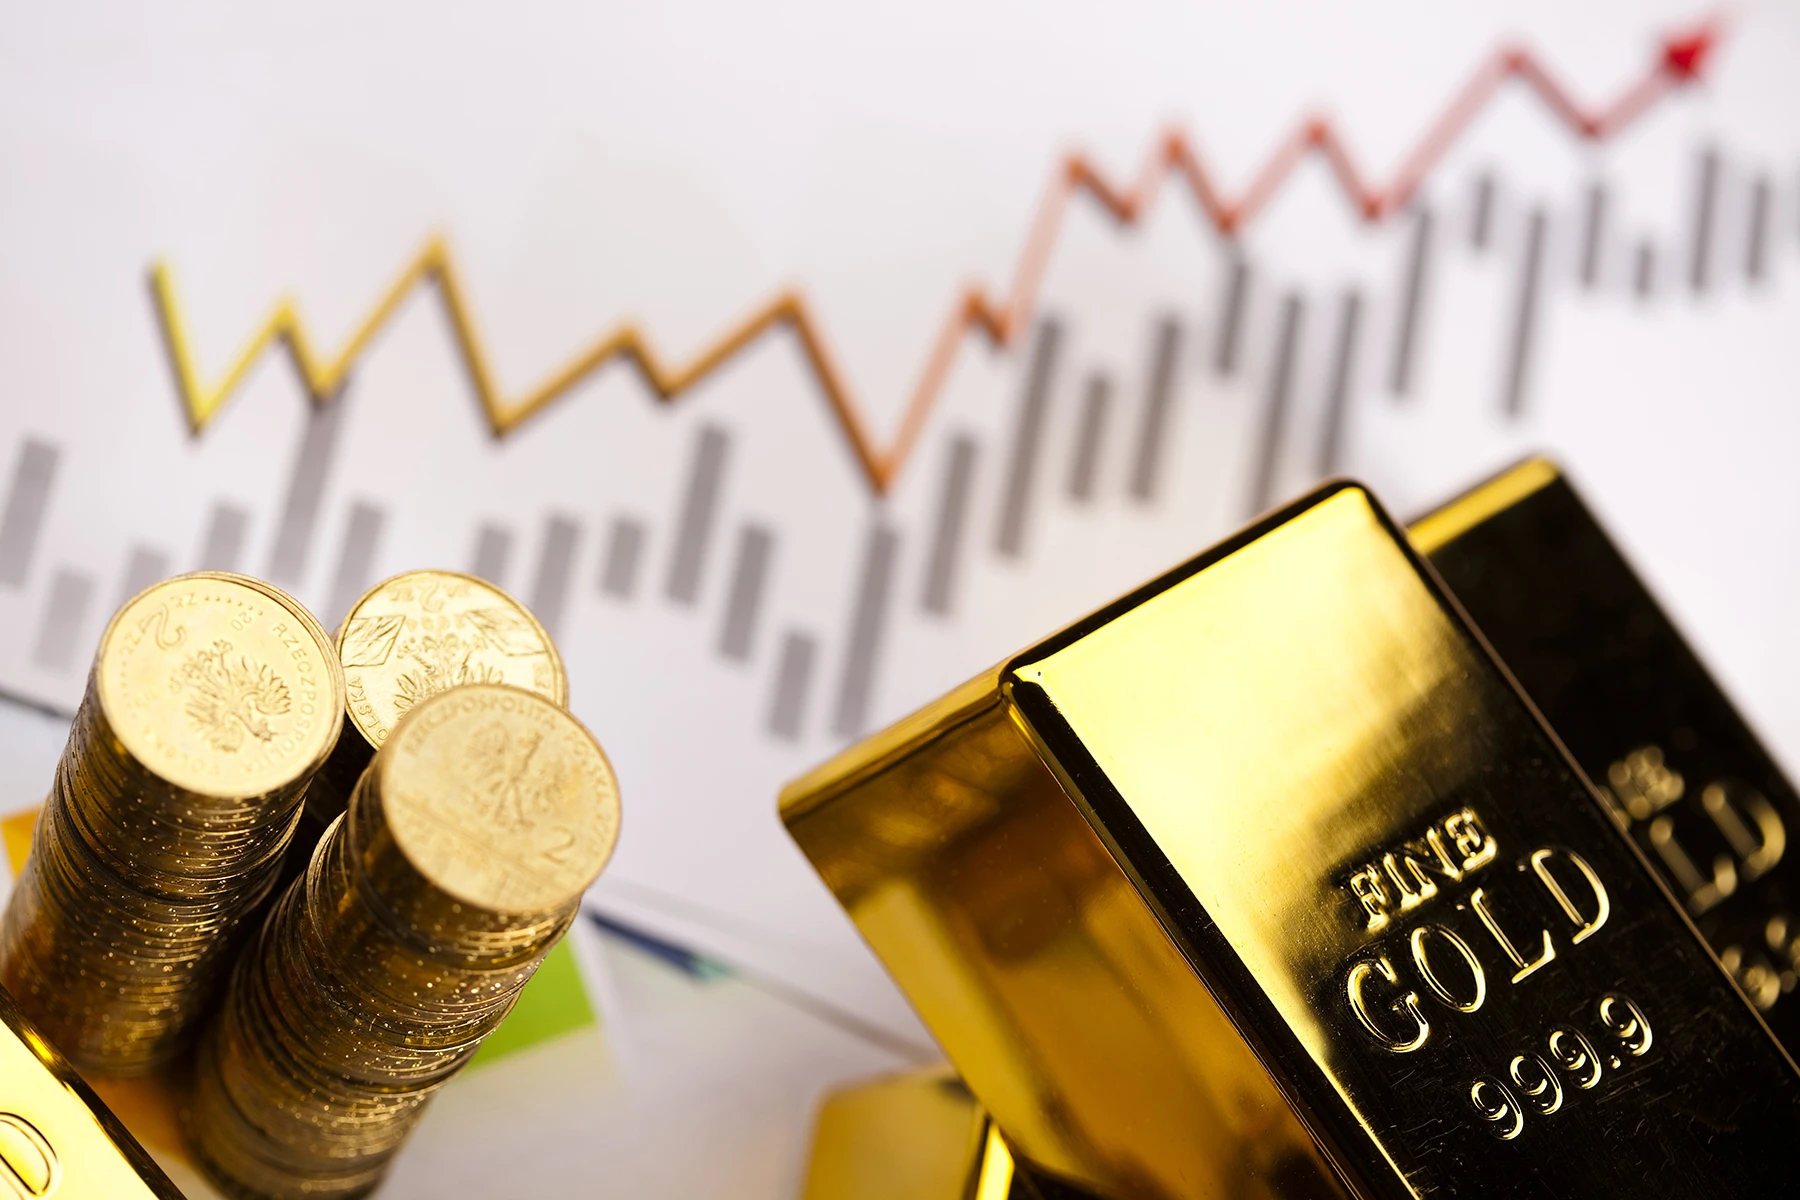 Altın Fiyatları Yükselişte, Yatırımcılar Endişeli